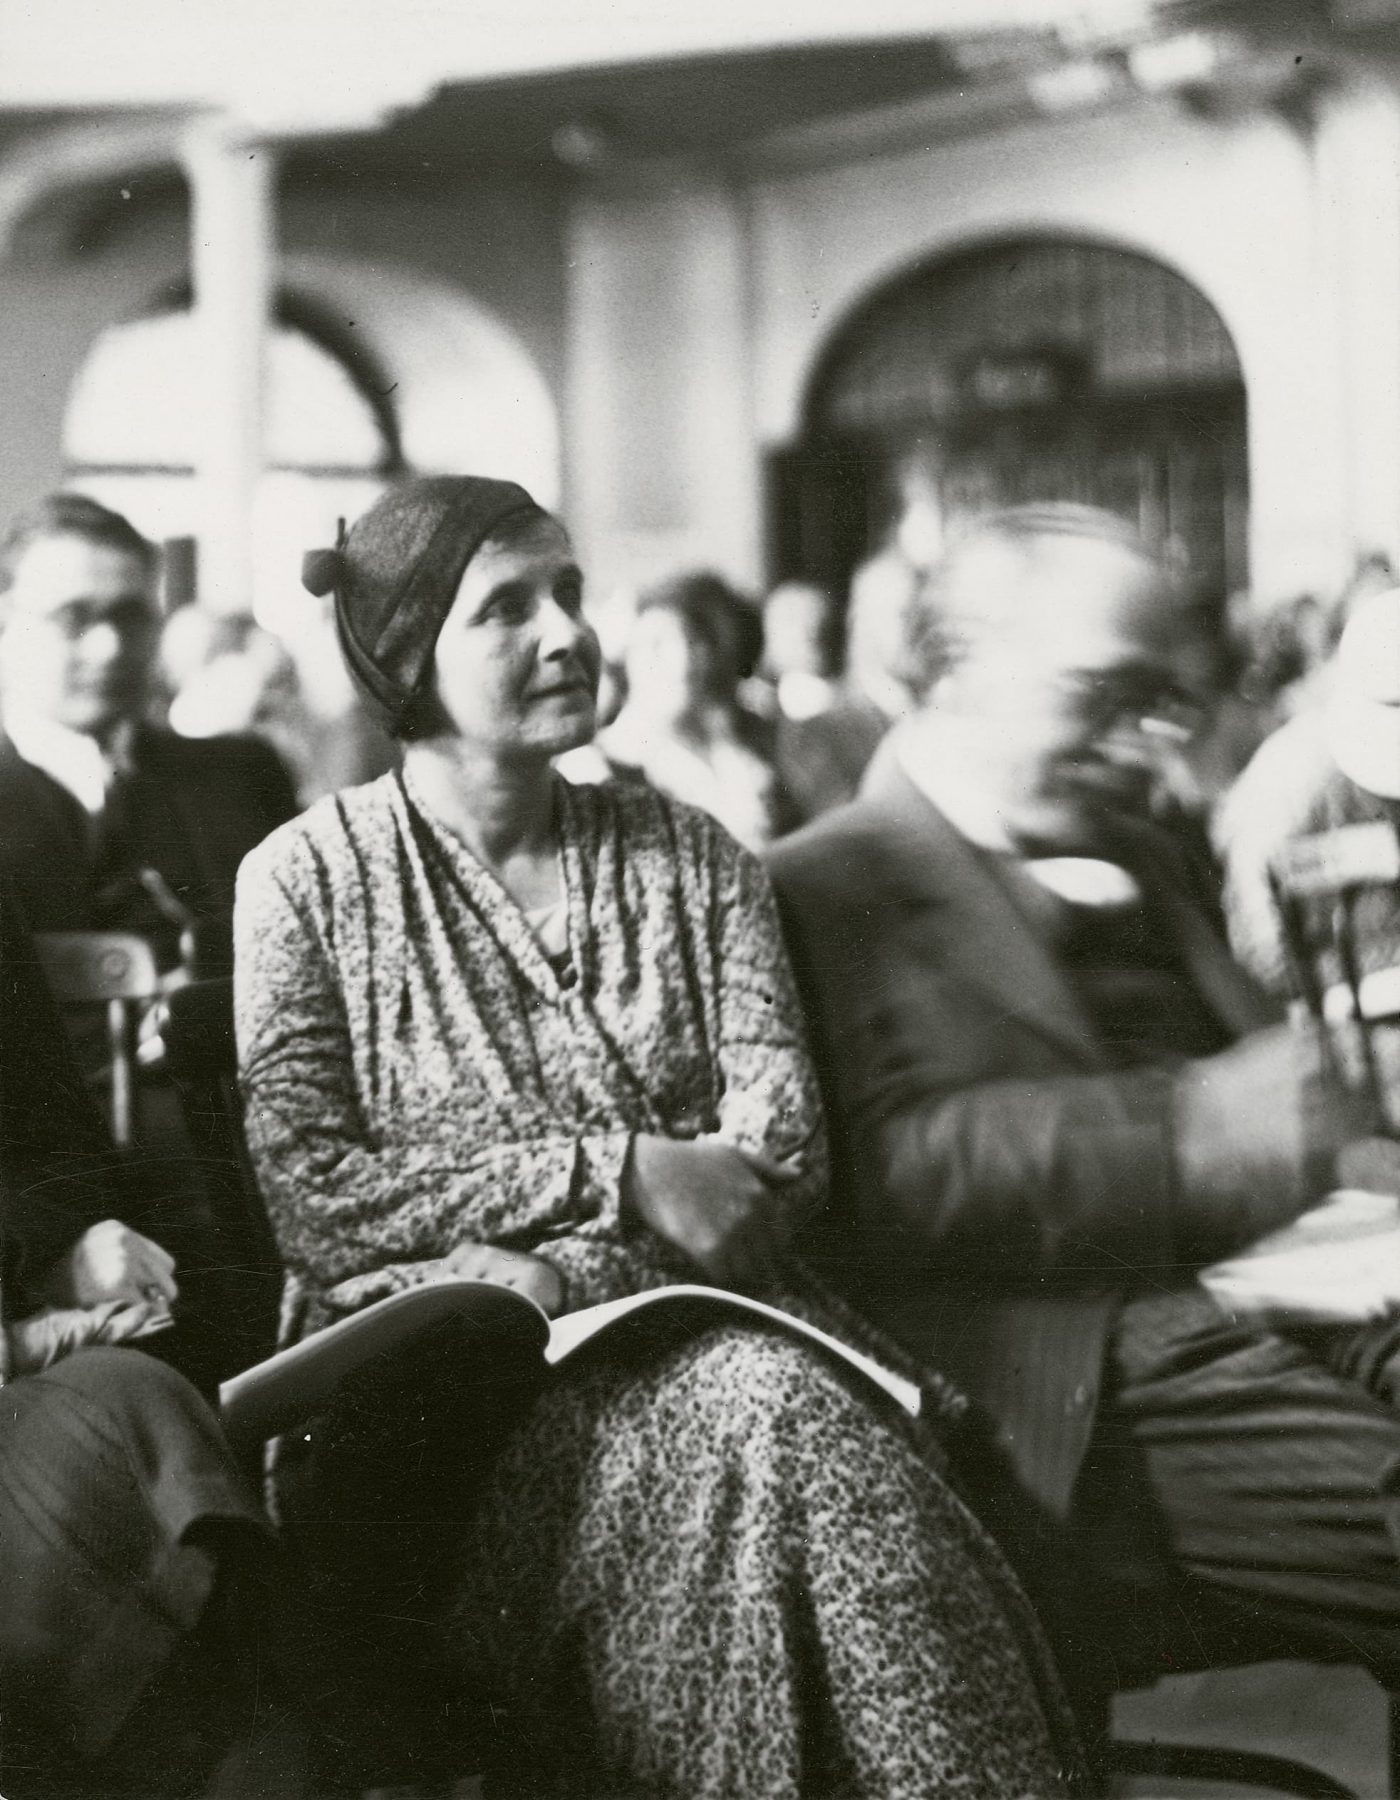 Historisches Schwarzweißfoto einer Frau mit einem aufgeschlagenen Buch auf dem Schoss in einem Raum mit vielen Personen.